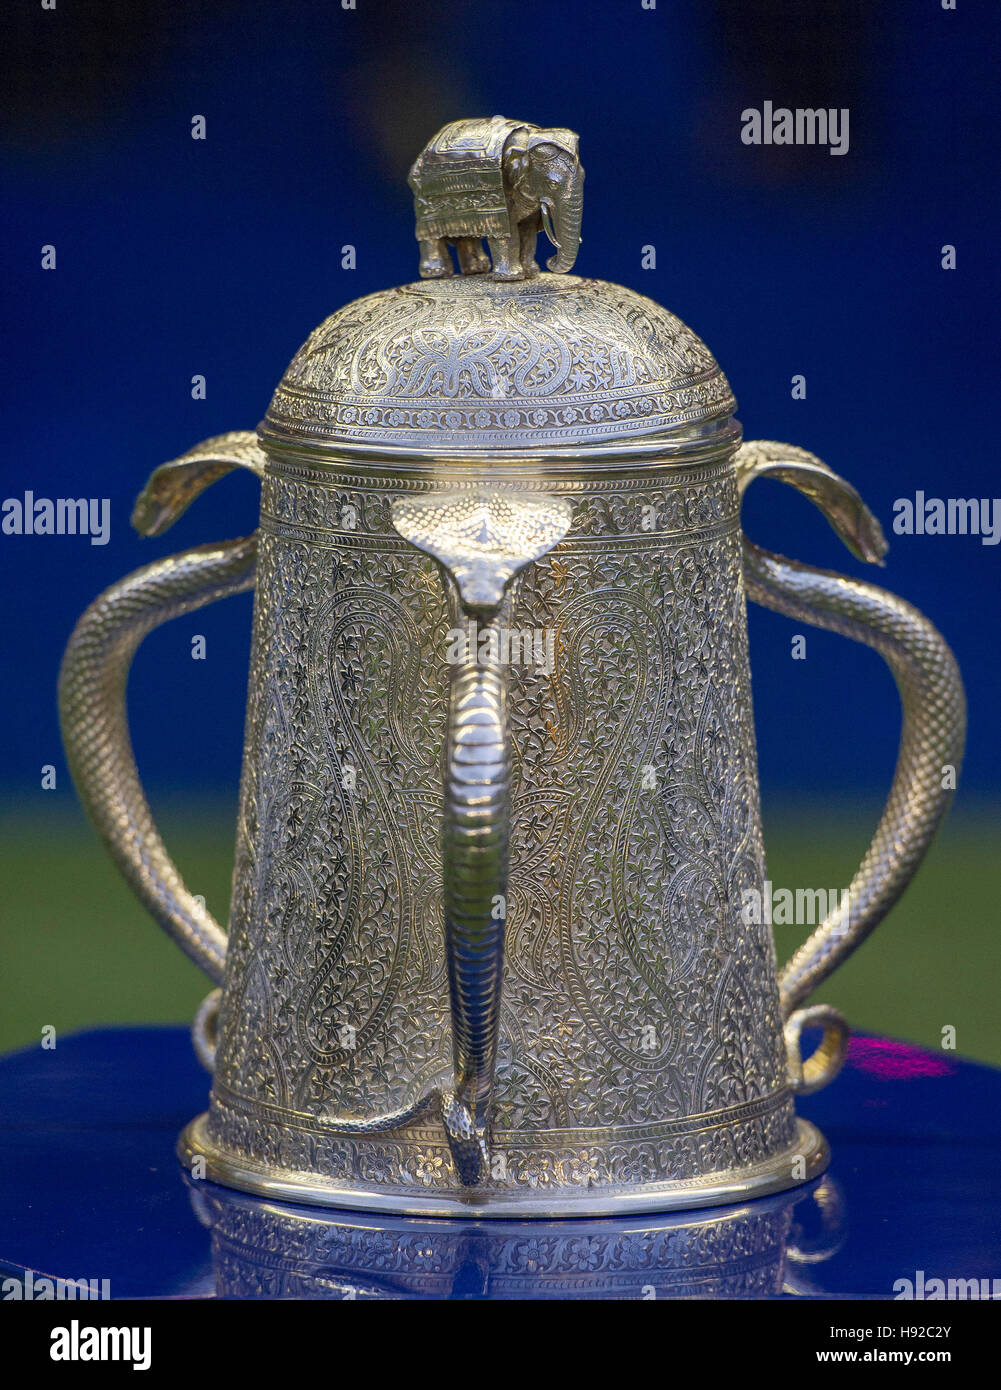 Die Calcutta Cup ist ein Rugby union Trophäe für den Gewinner der jährlichen Six Nations Championship Match zwischen England und Schottland. Stockfoto